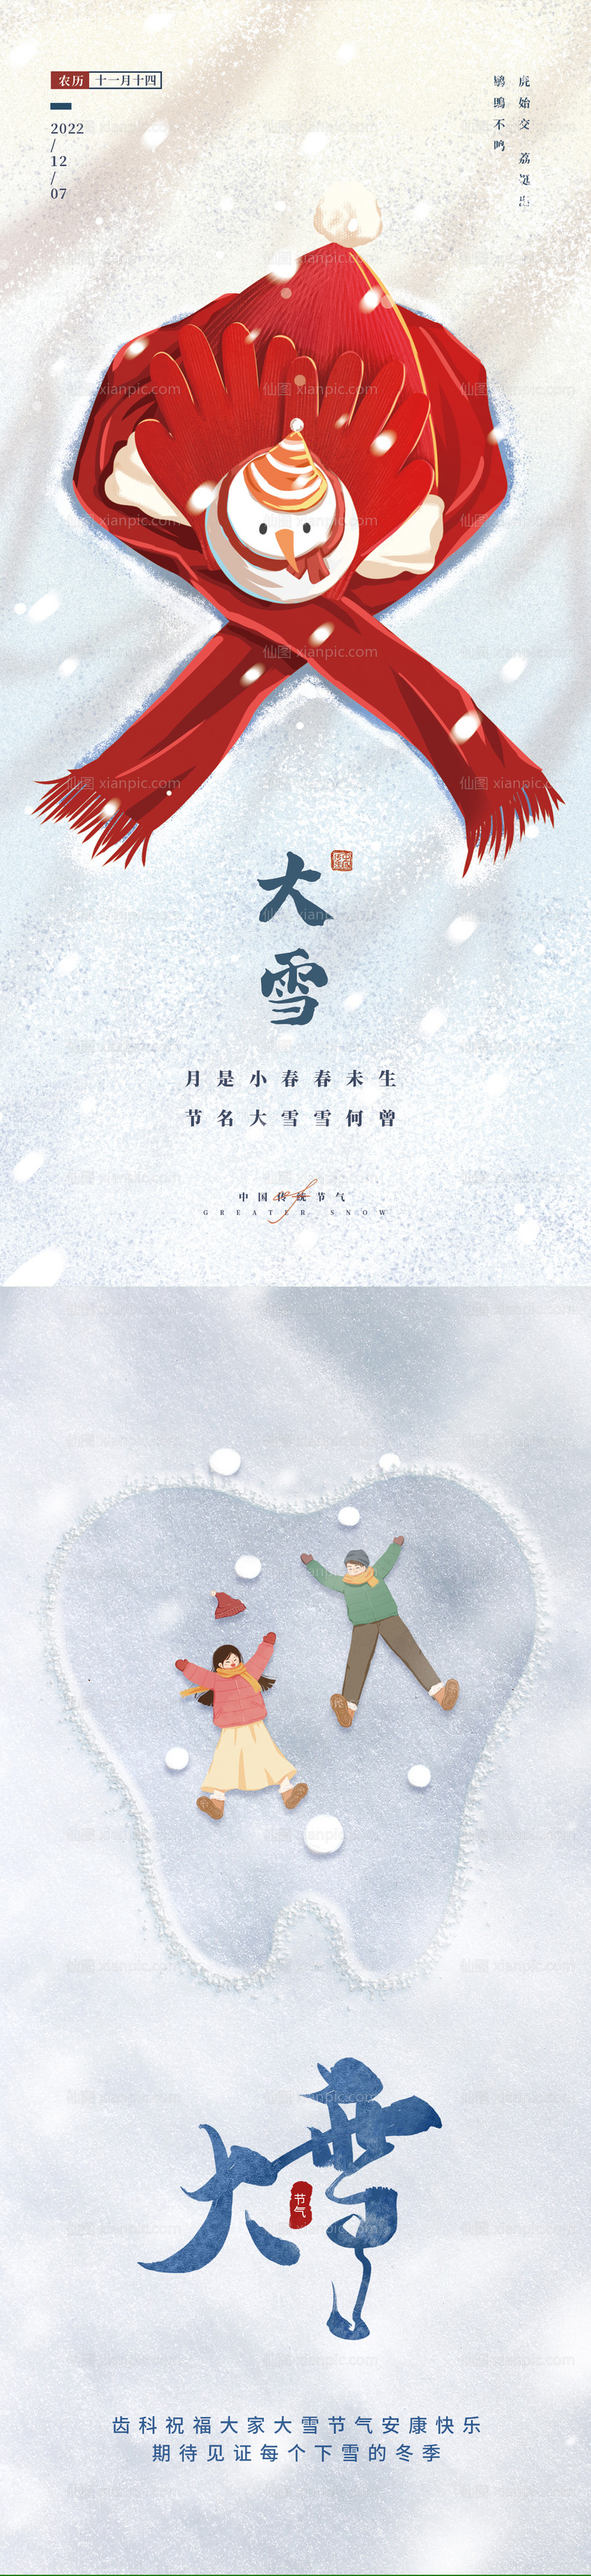 素材乐-大雪节气海报